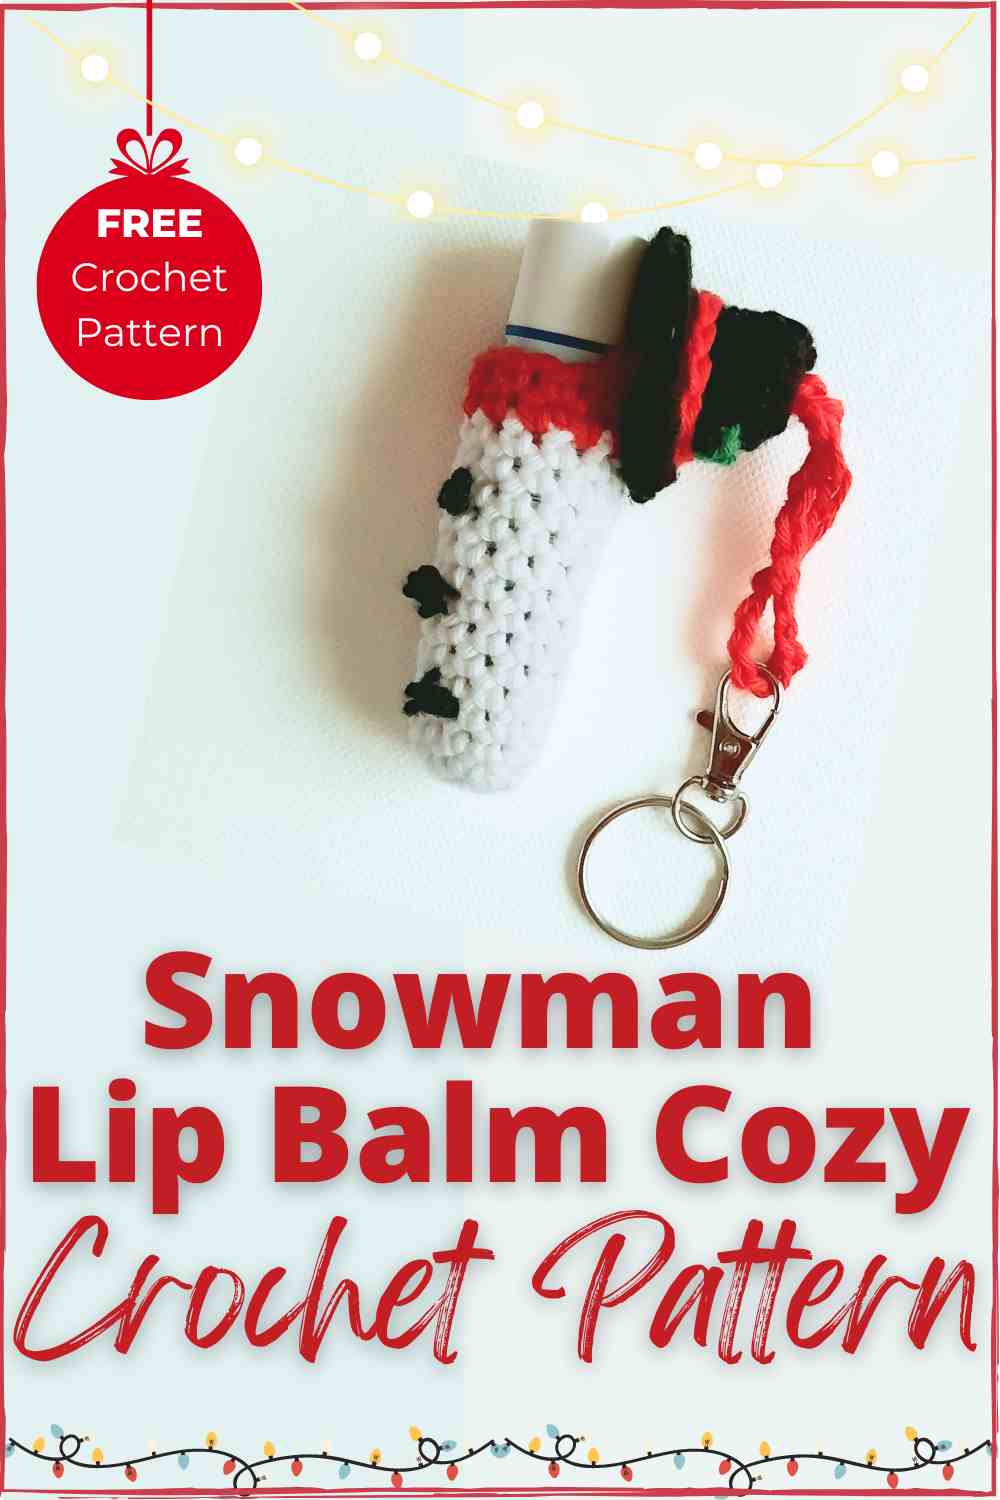 Snowman lip balm cozy crochet pattern Free